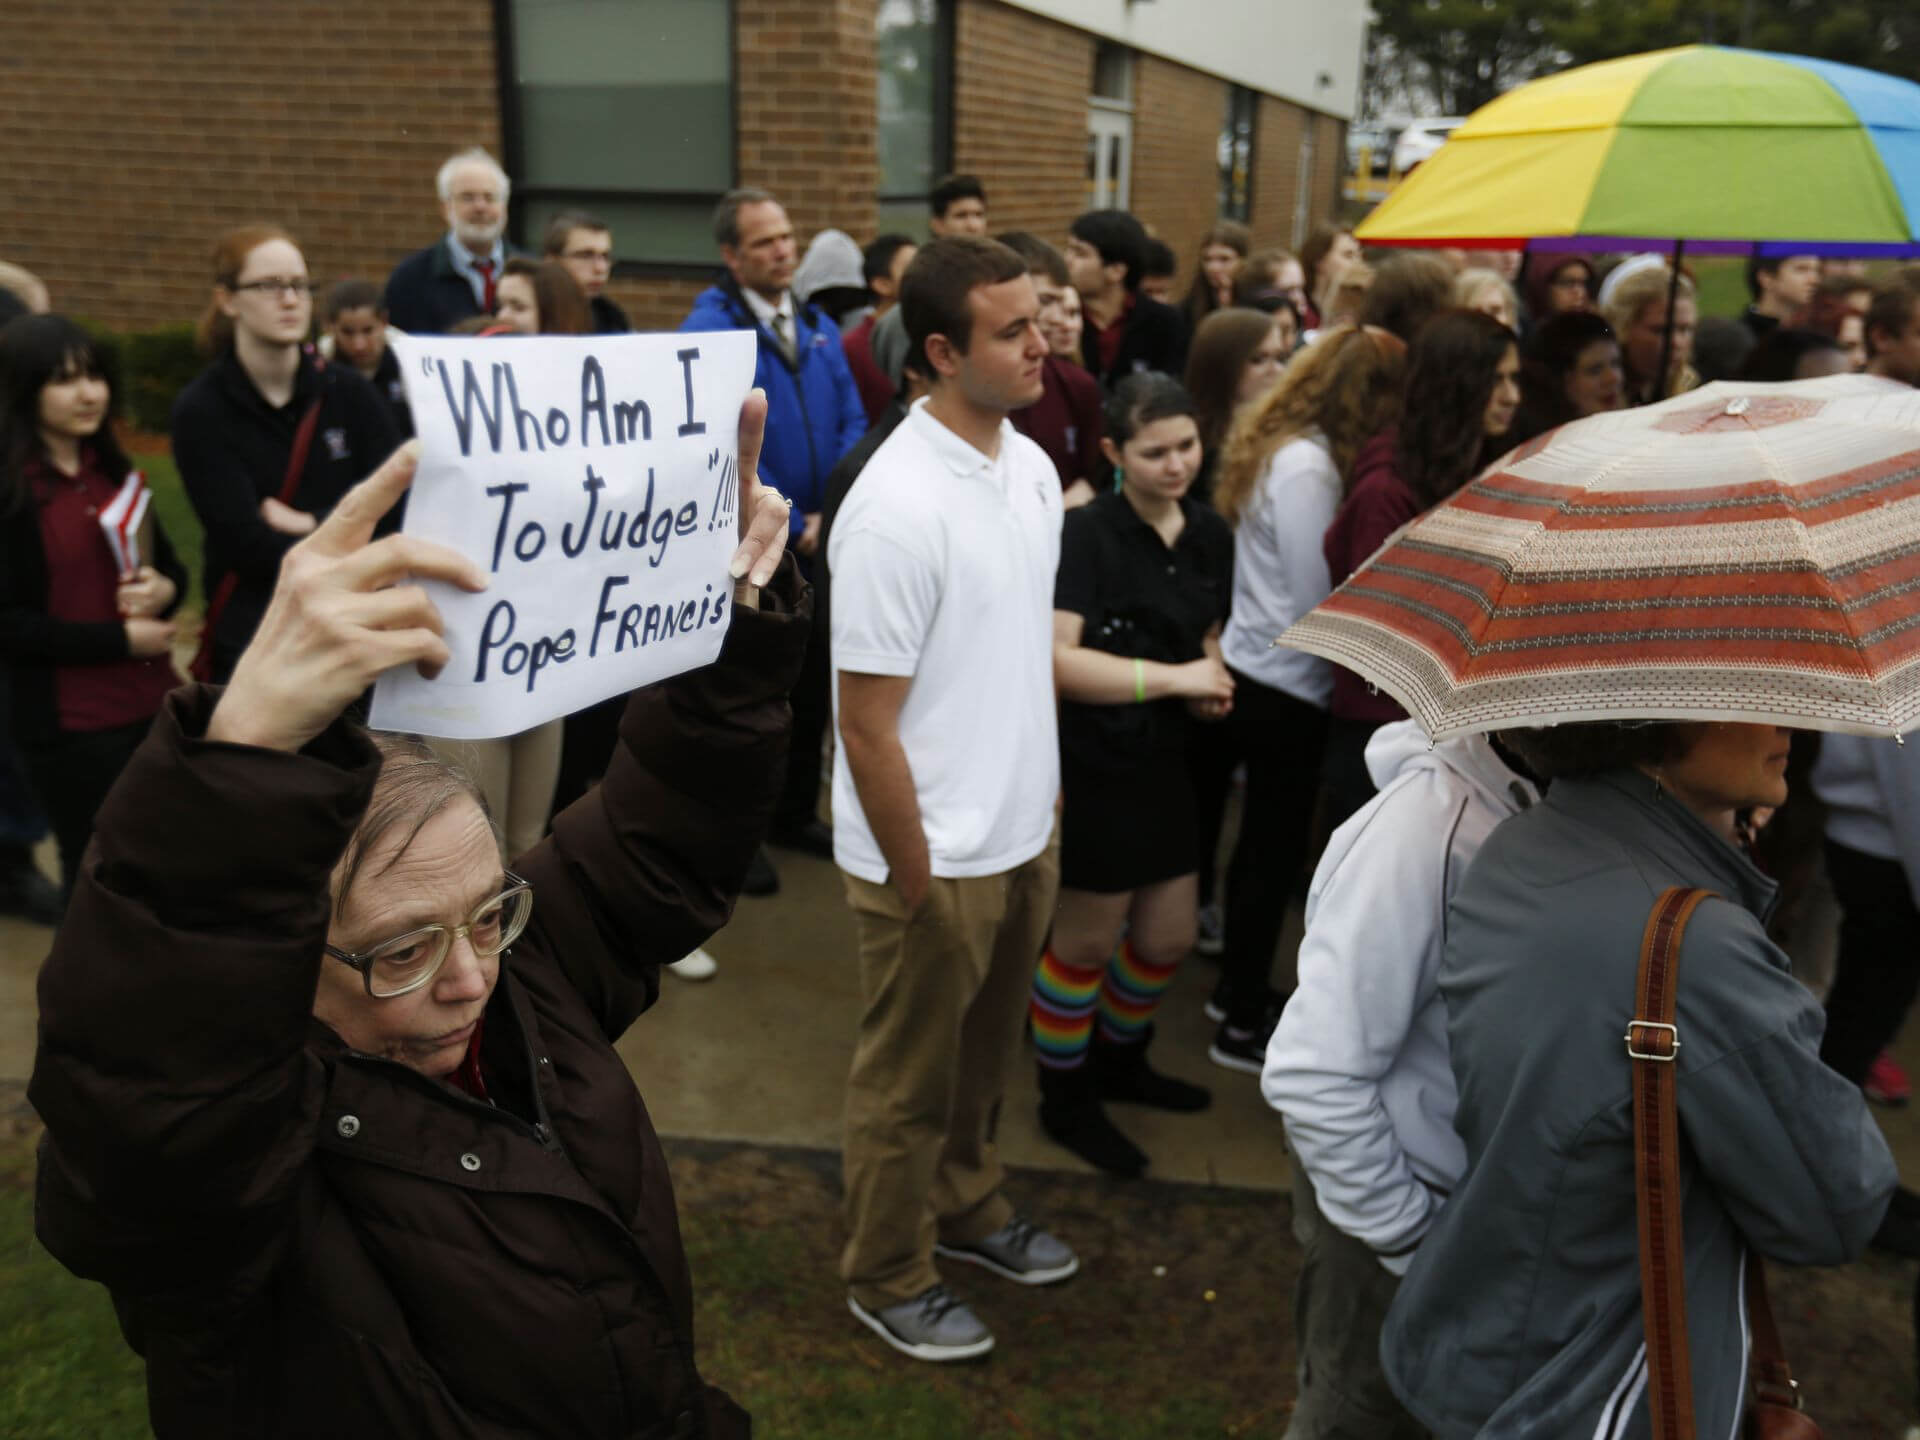 Scuola cattolica rifiuta insegnante gay: gli studenti protestano